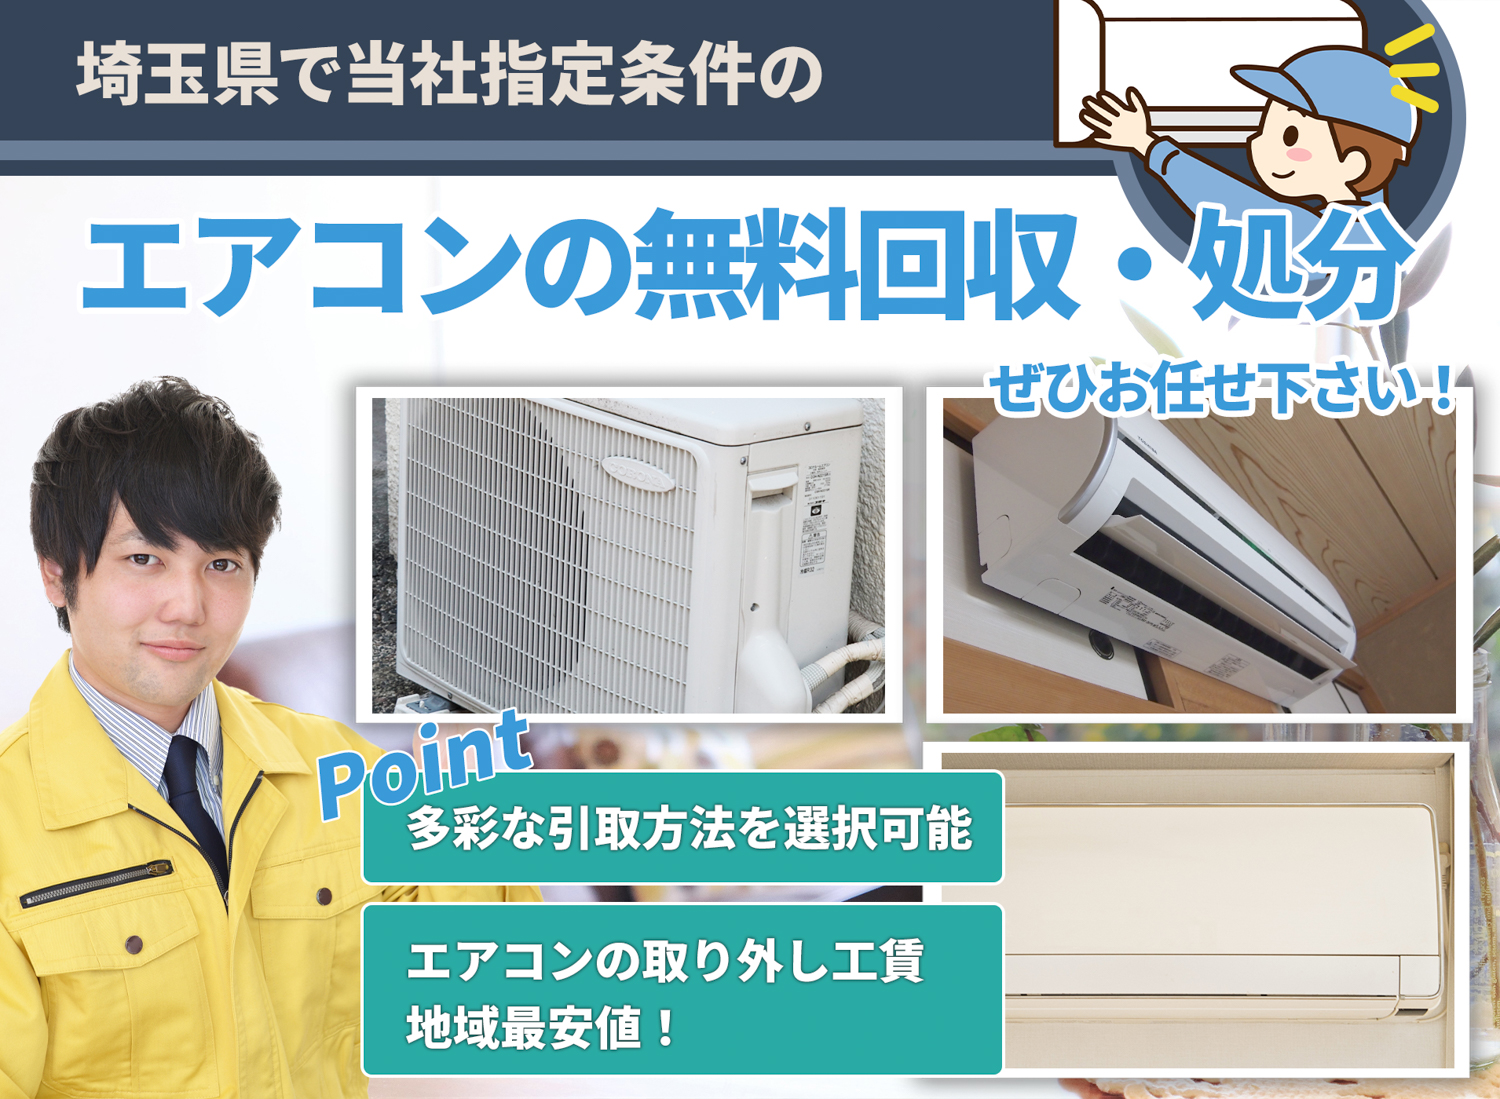 埼玉県で「丁寧な作業」で安心をエアコン無料回収処分隊のエアコン無料回収サービス